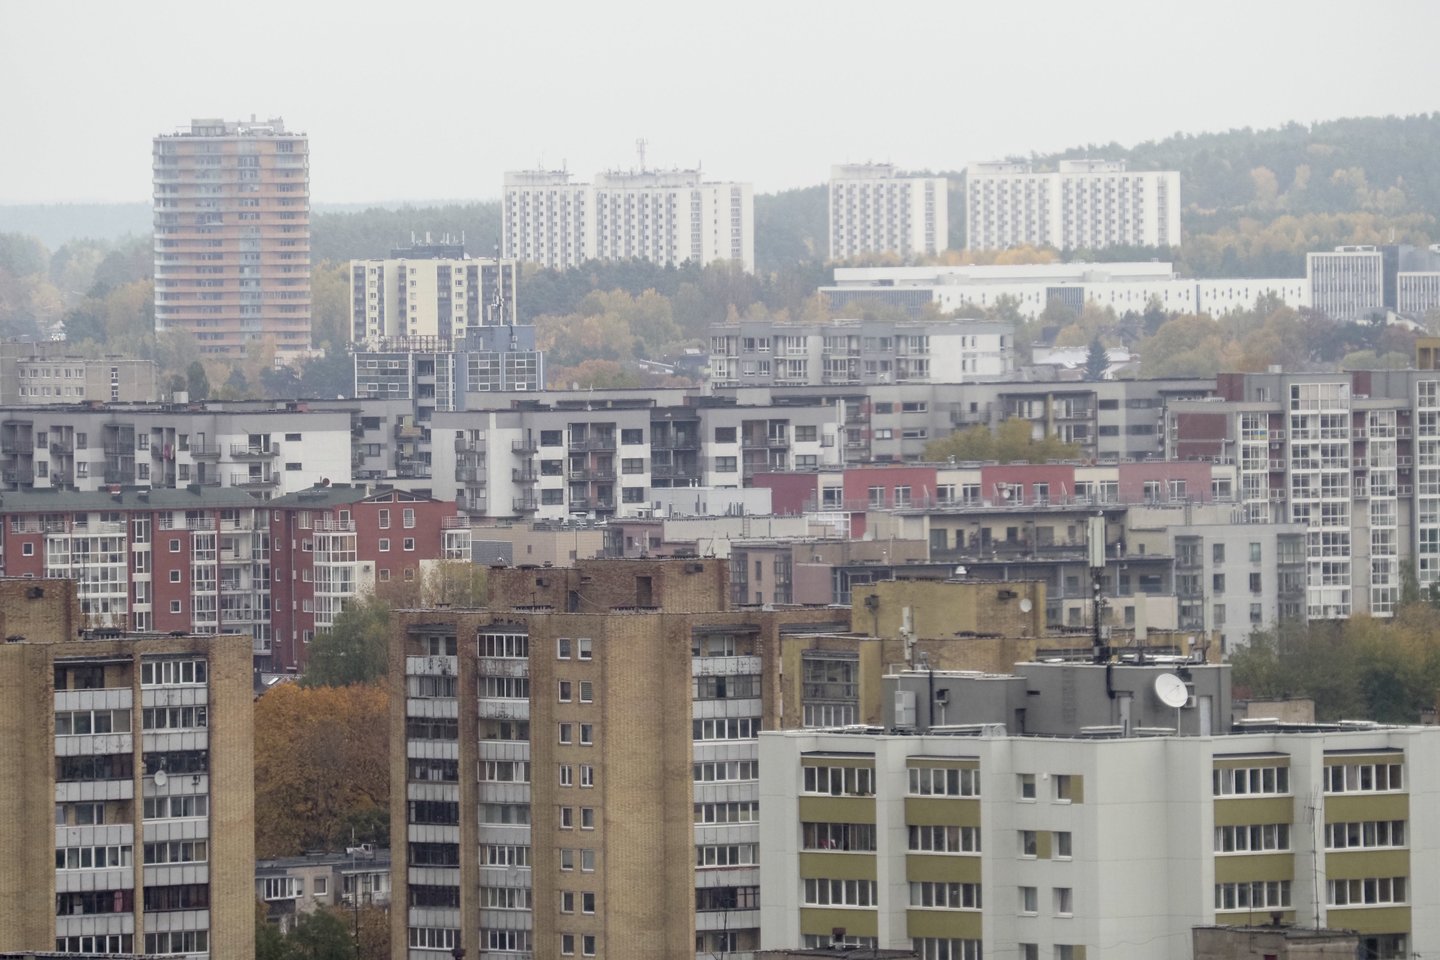 Vidutinė laisvų butų 1 kv. m kaina Vilniuje kovo pabaigoje siekė 3445 eurus.<br>V.Ščiavinsko nuotr.